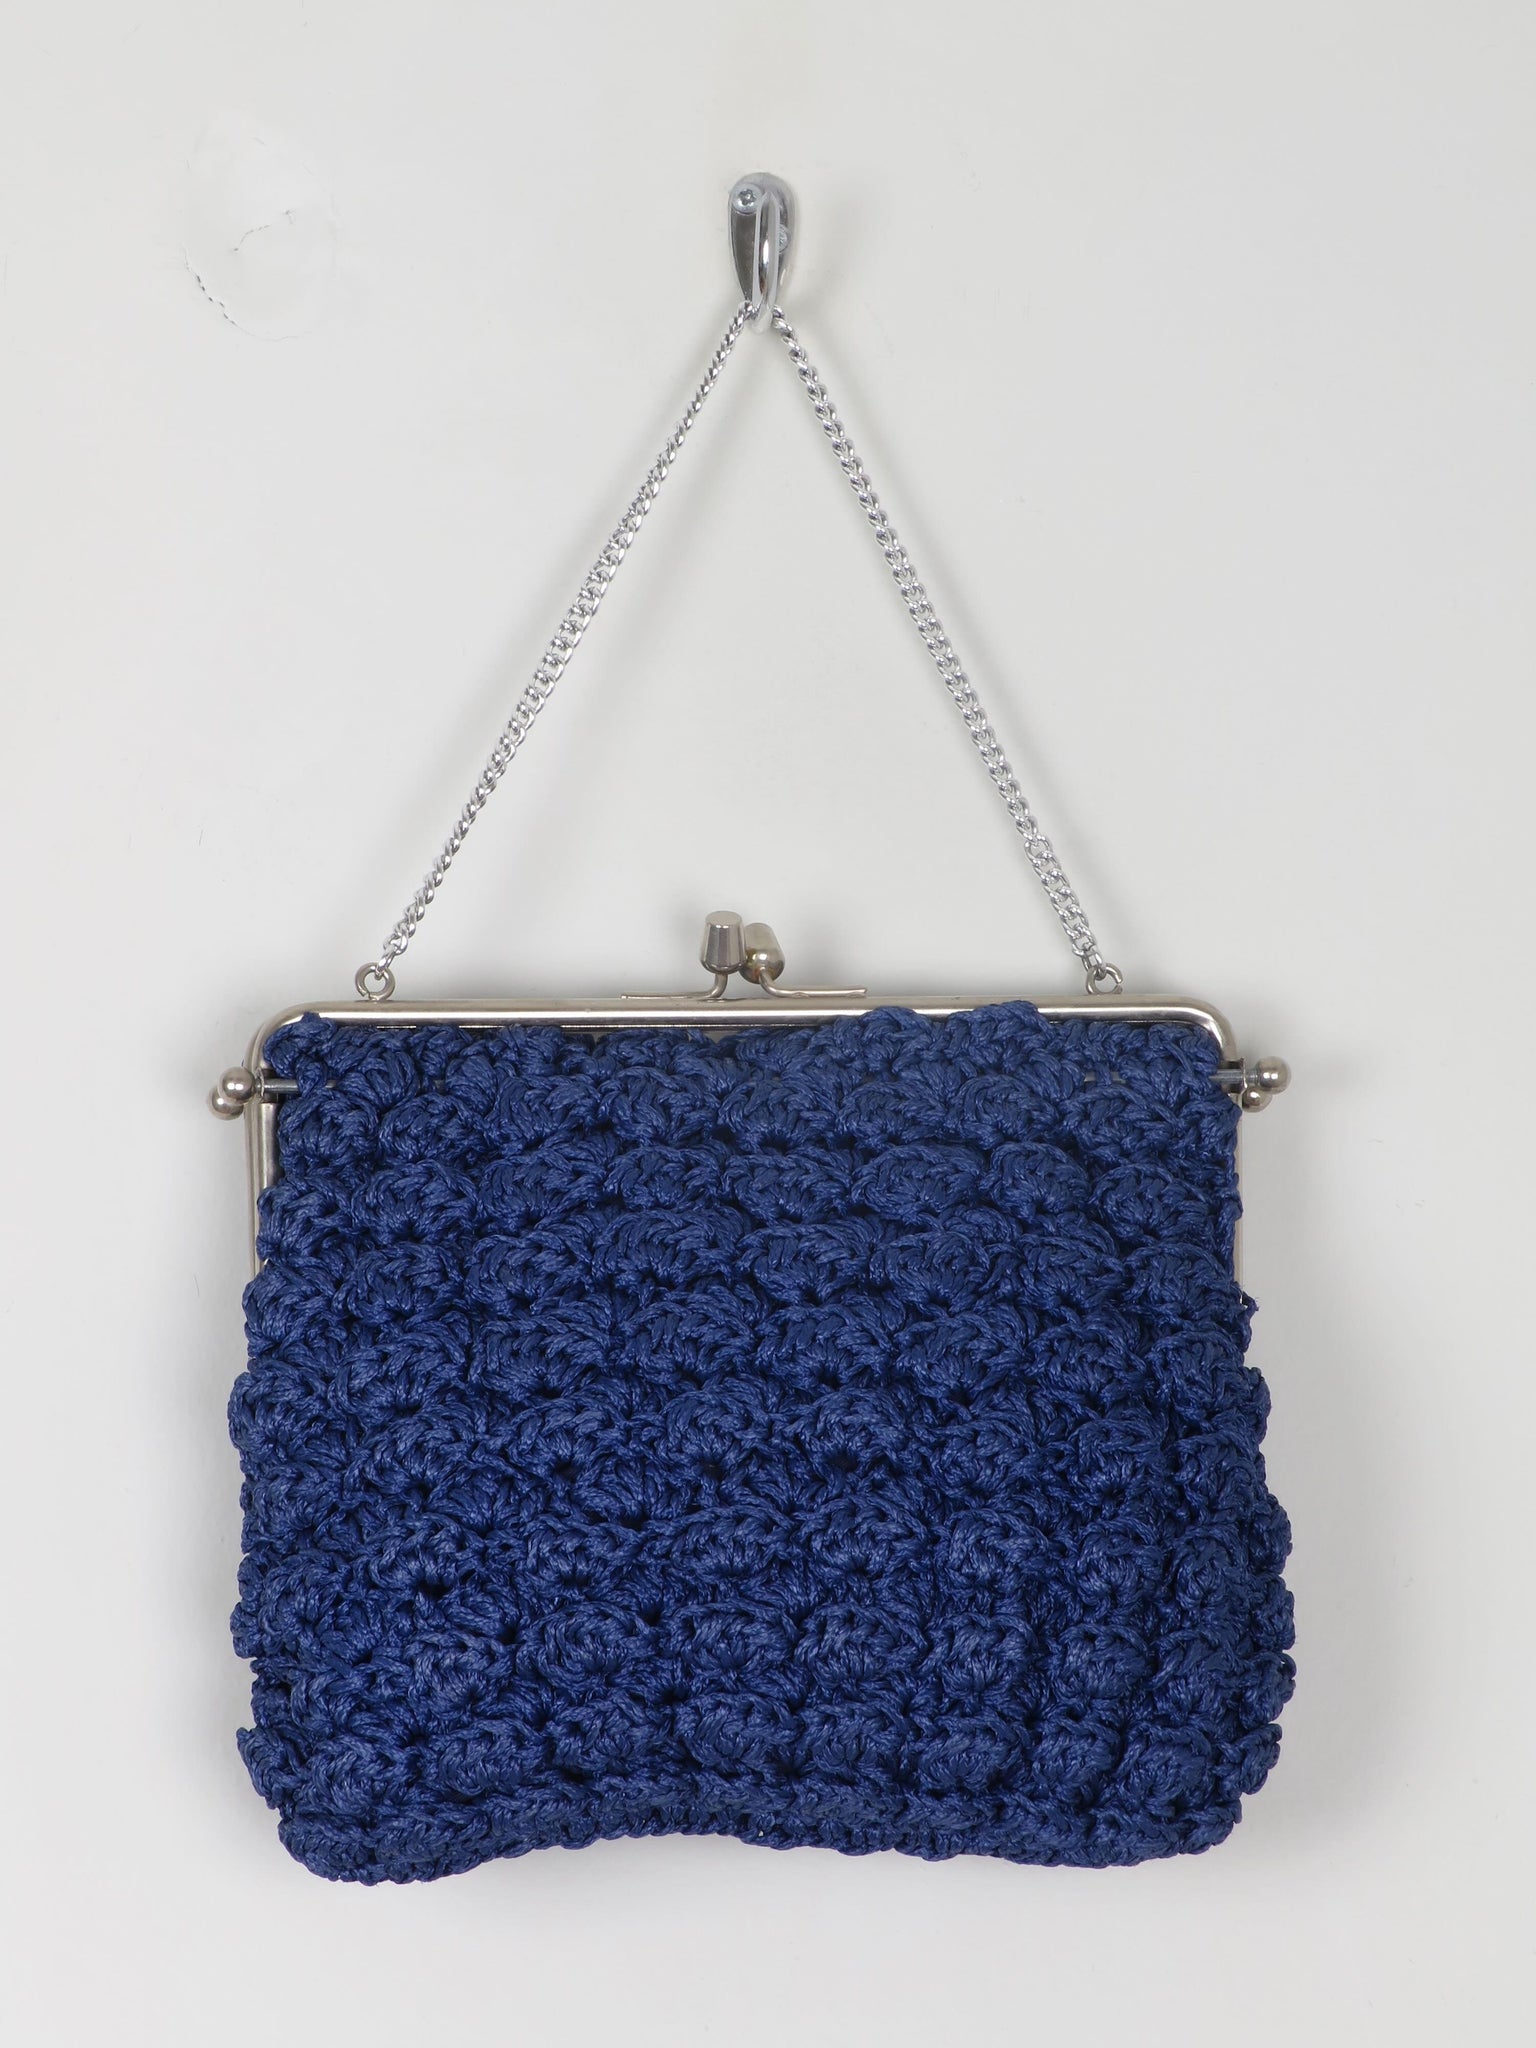 Vintage Navy Crochet Handbag - The Harlequin